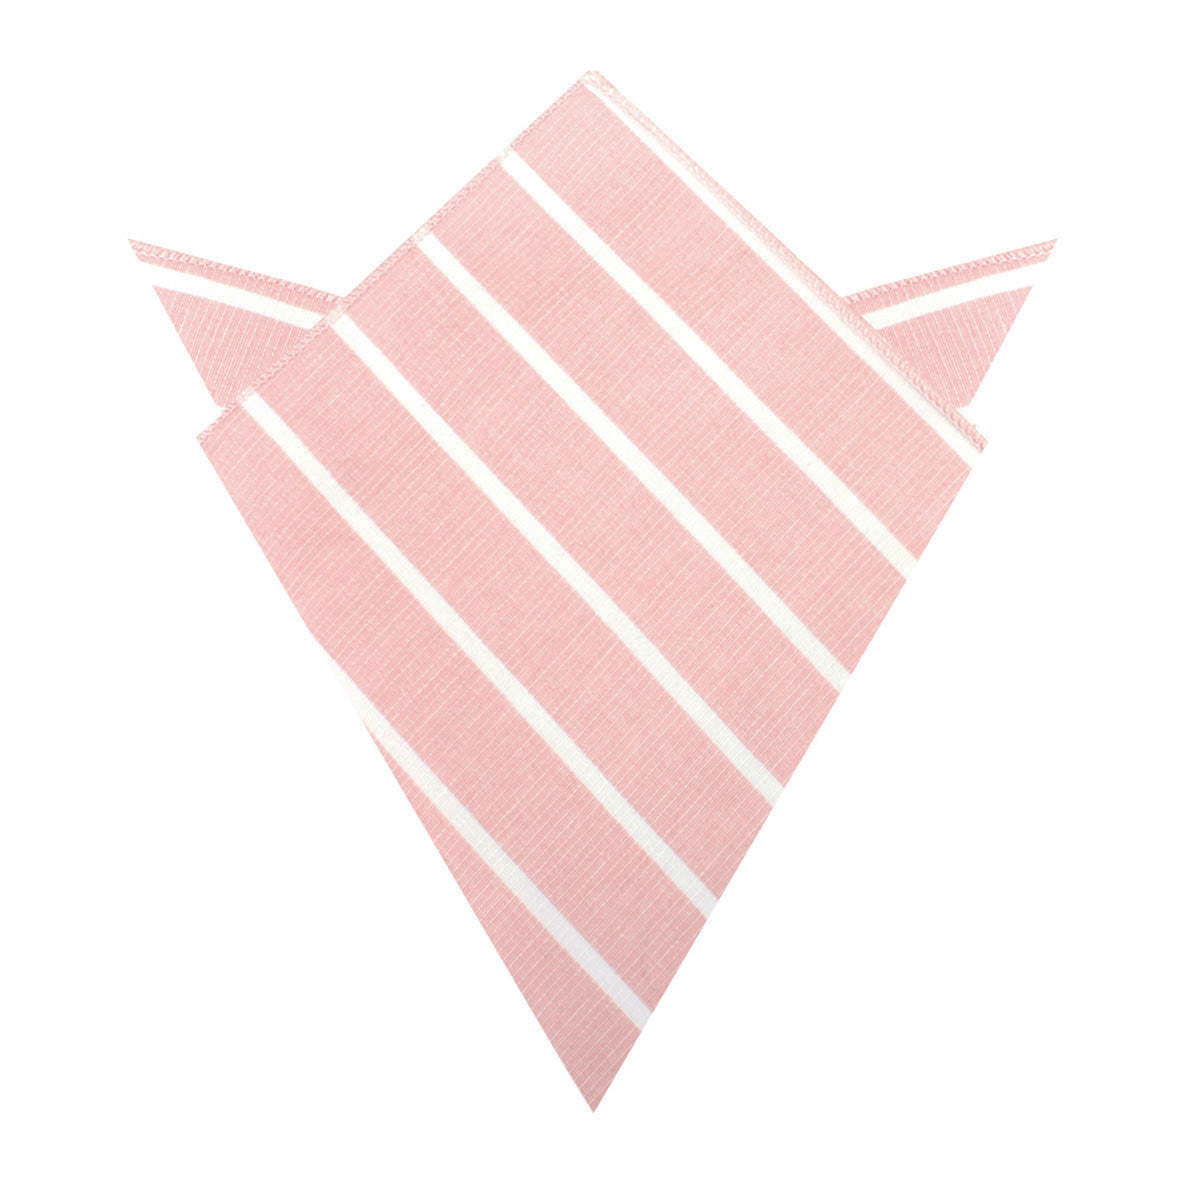 Santorini Pink Blush Striped Linen Pocket Square